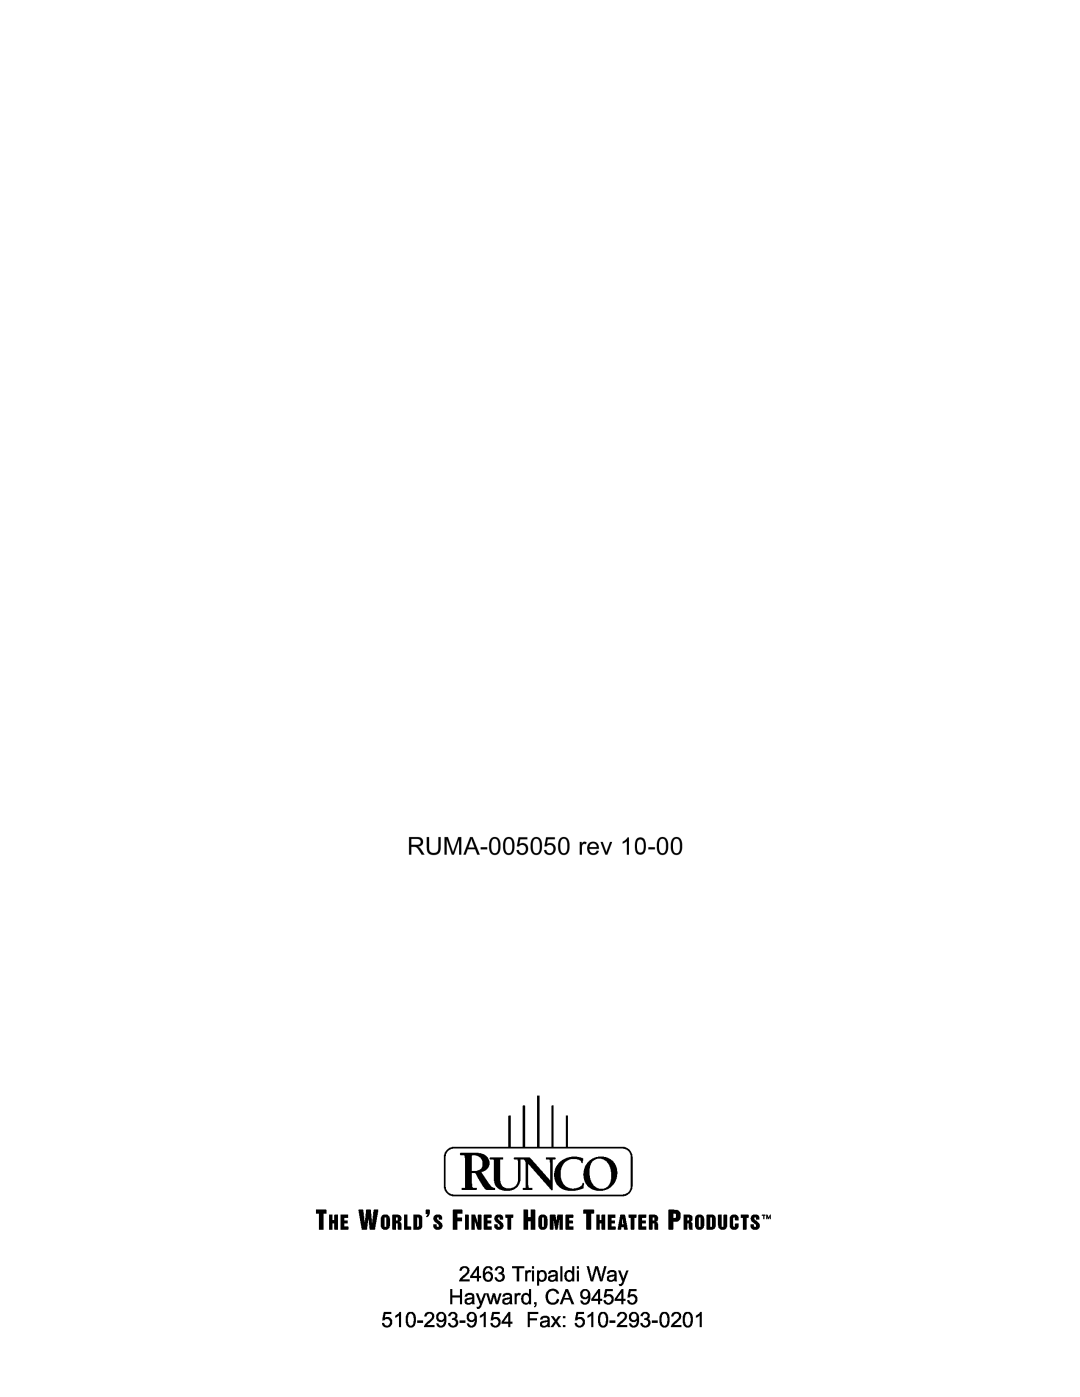 Runco VHD-4403 Ultra manual RUMA-005050rev, Tripaldi Way Hayward, CA 510-293-9154Fax 